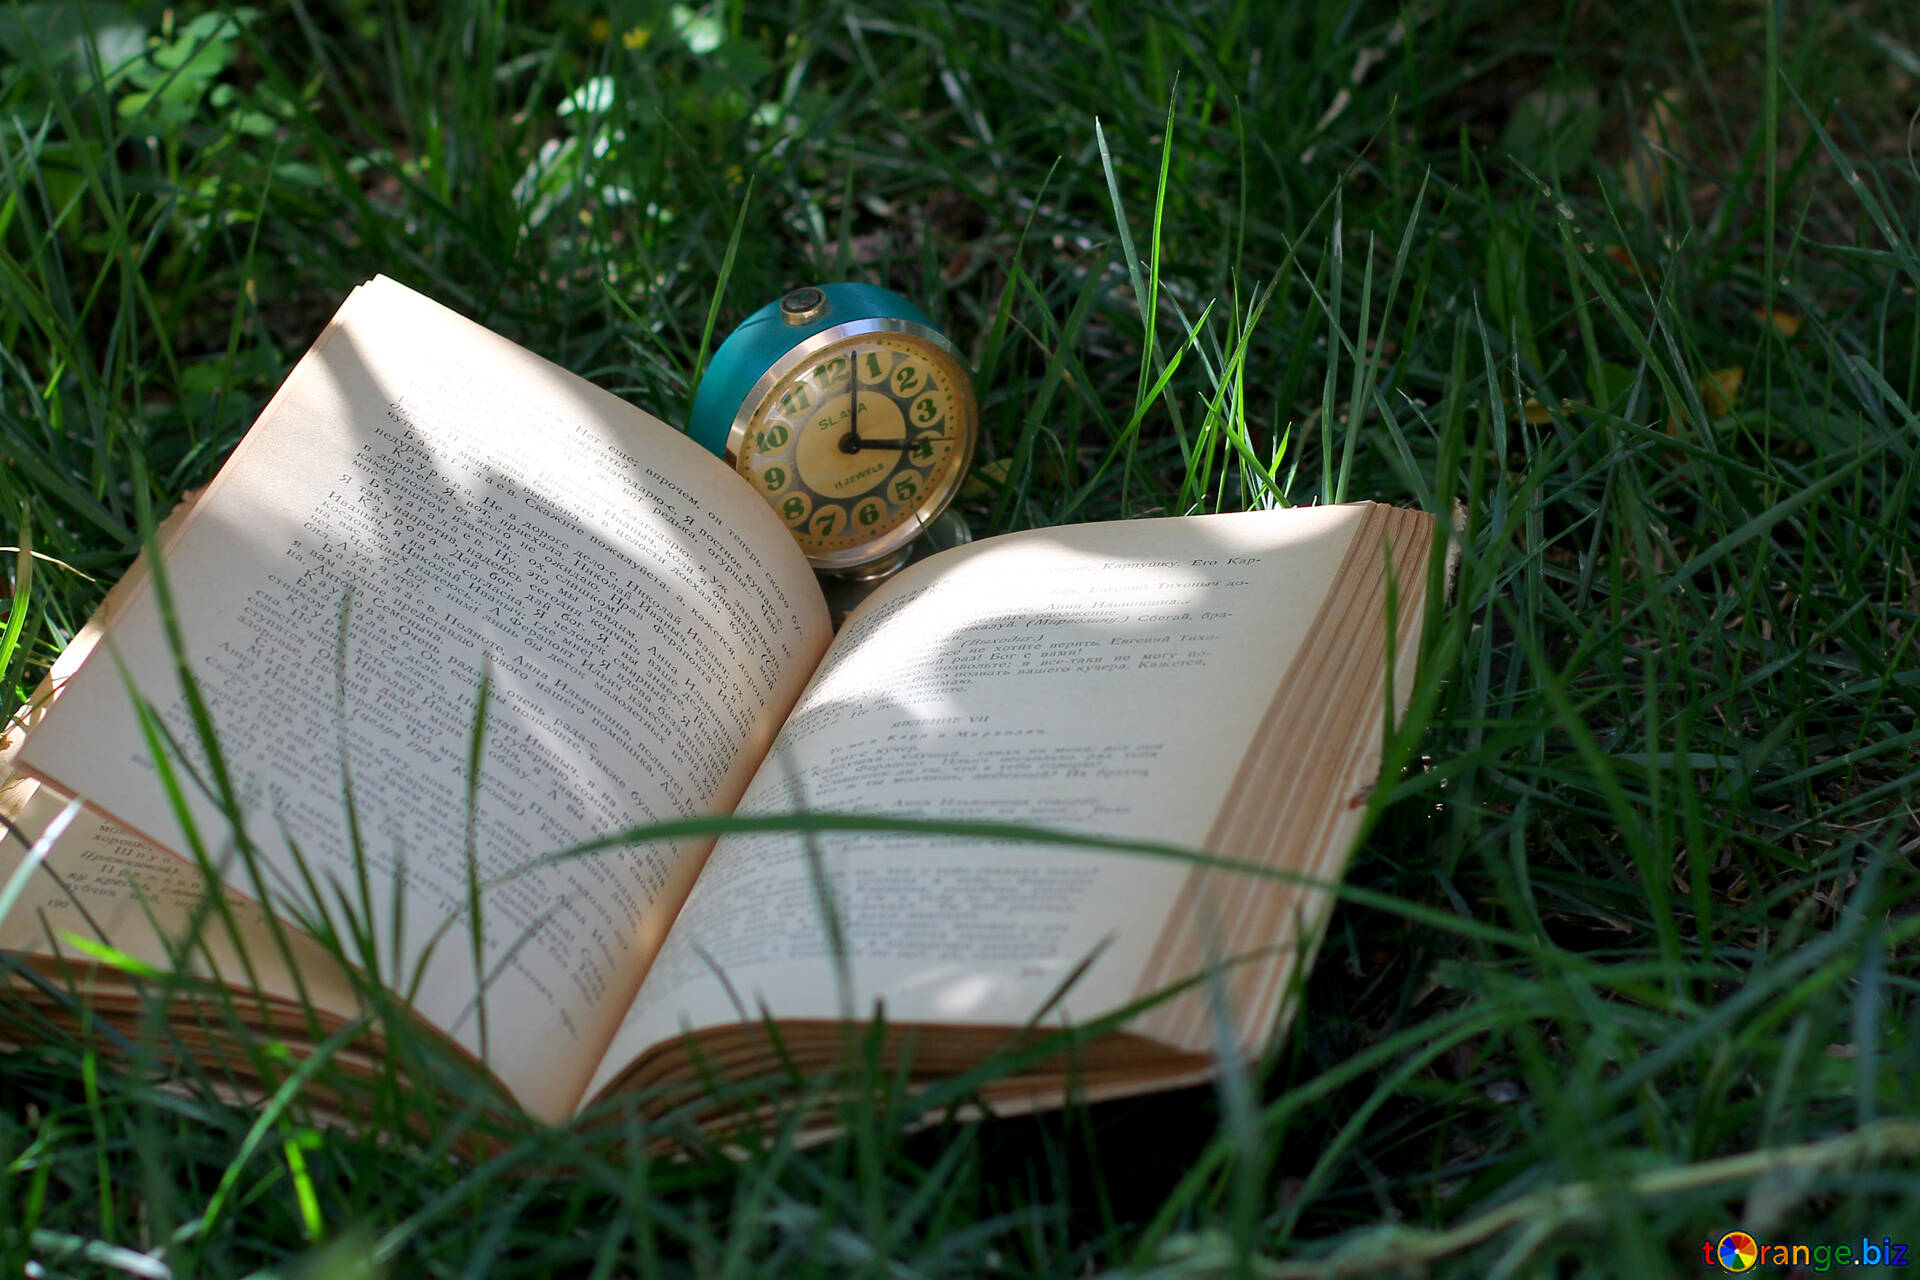 Великая книга открытая. Книга на траве. Раскрытая книга. Раскрытая книга на траве. Книги на траве красивые.